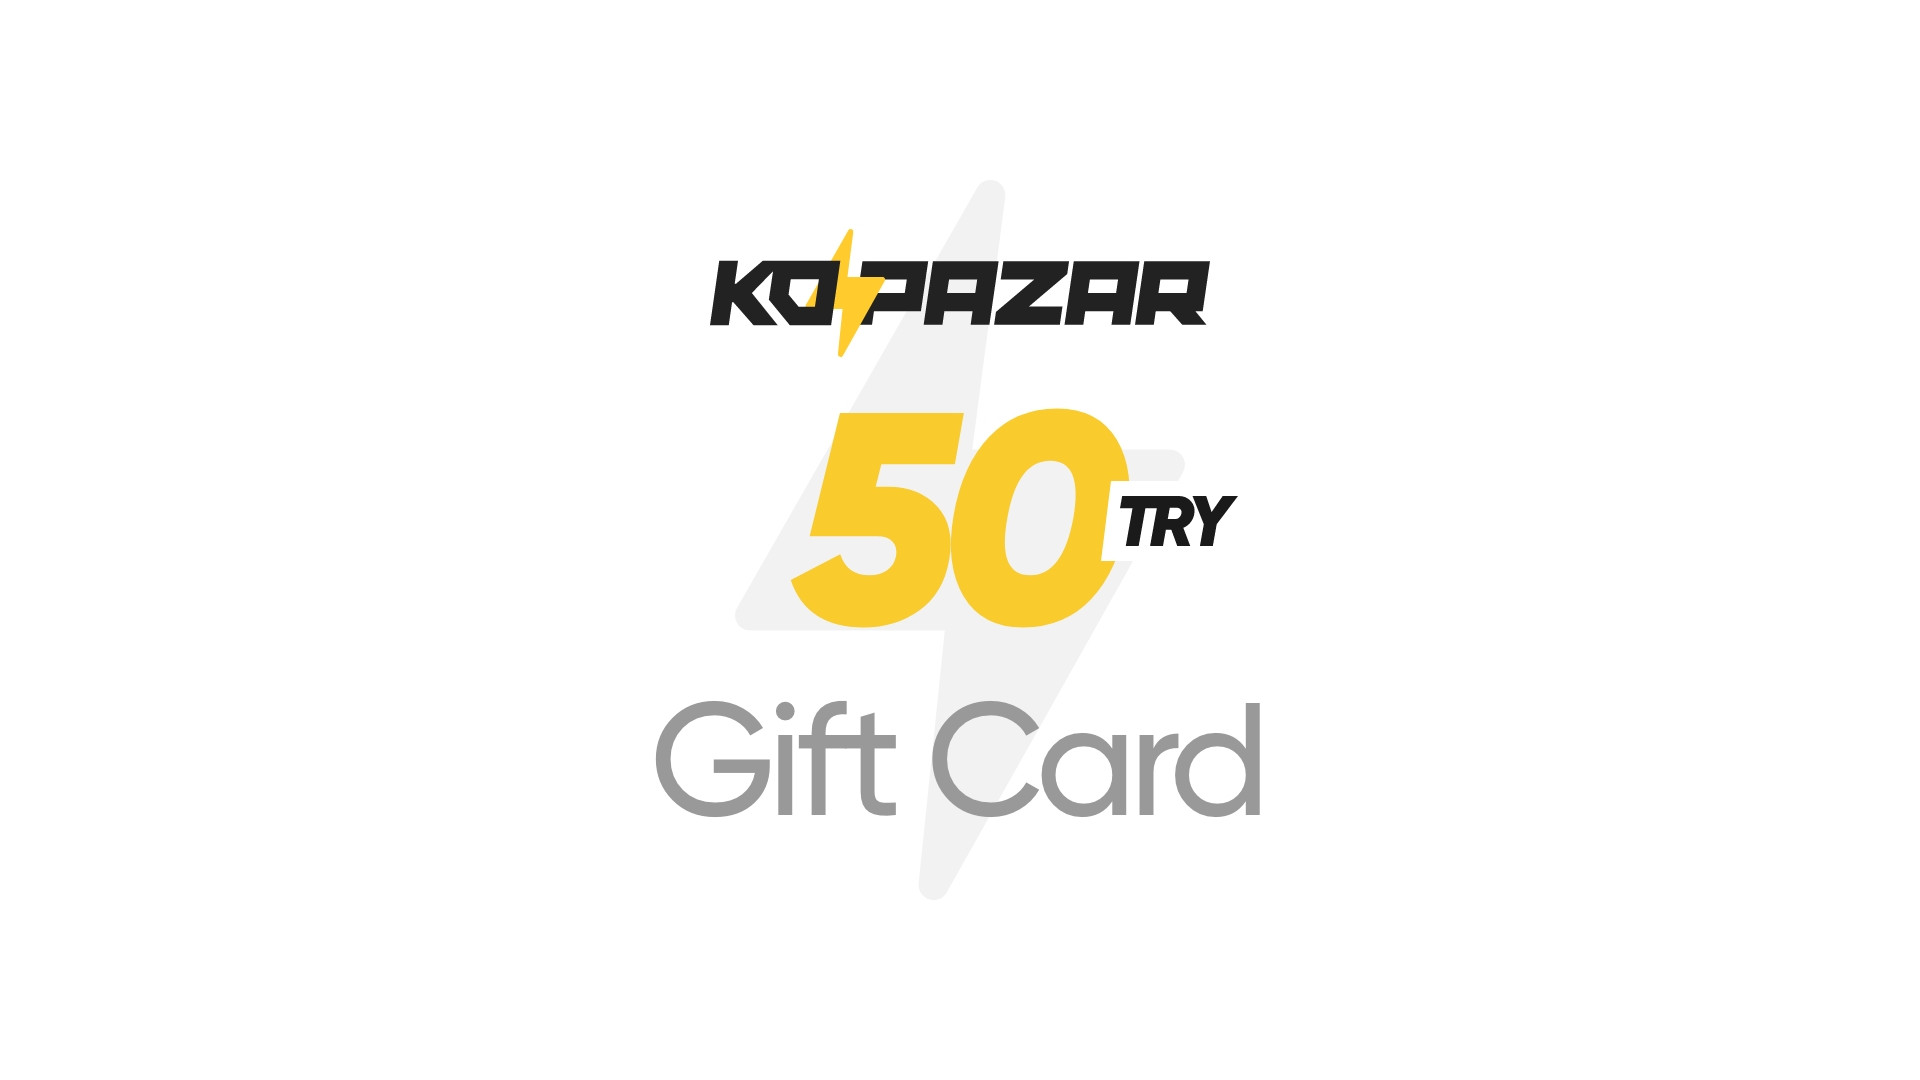 Kopazar 50 TRY Gift Card [$ 2.09]